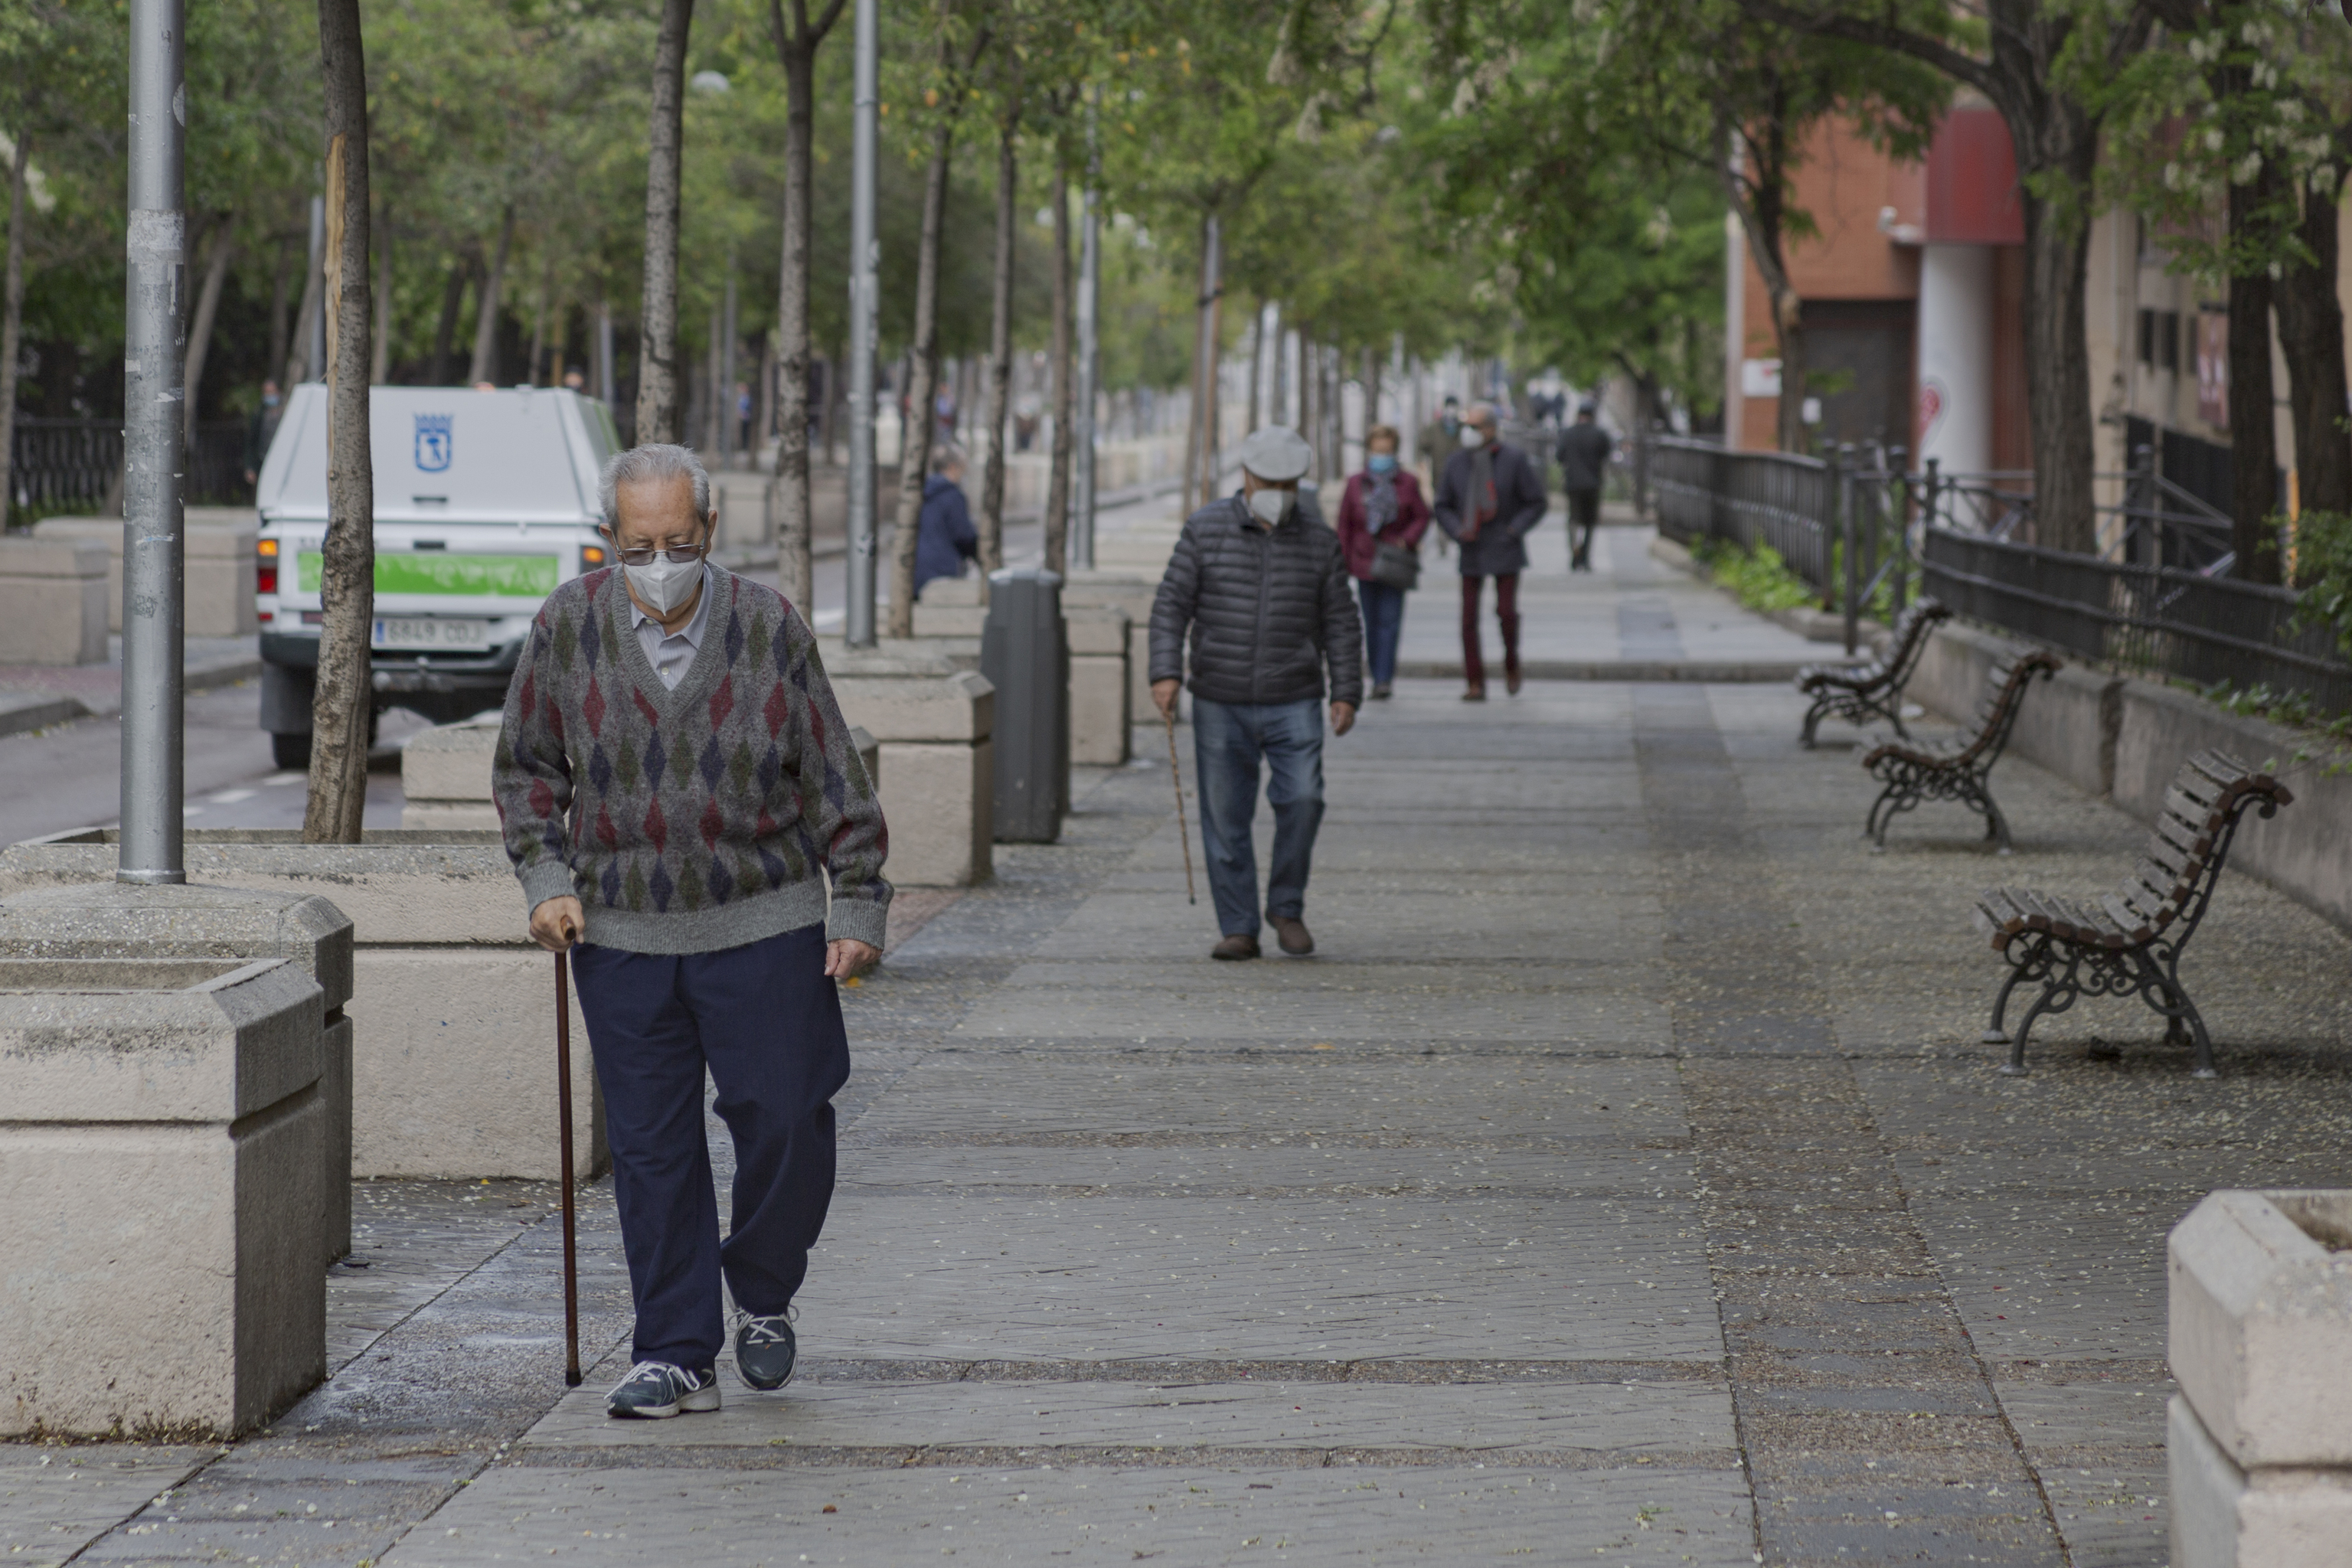 Jubilados, paseando por una calle de Madrid.